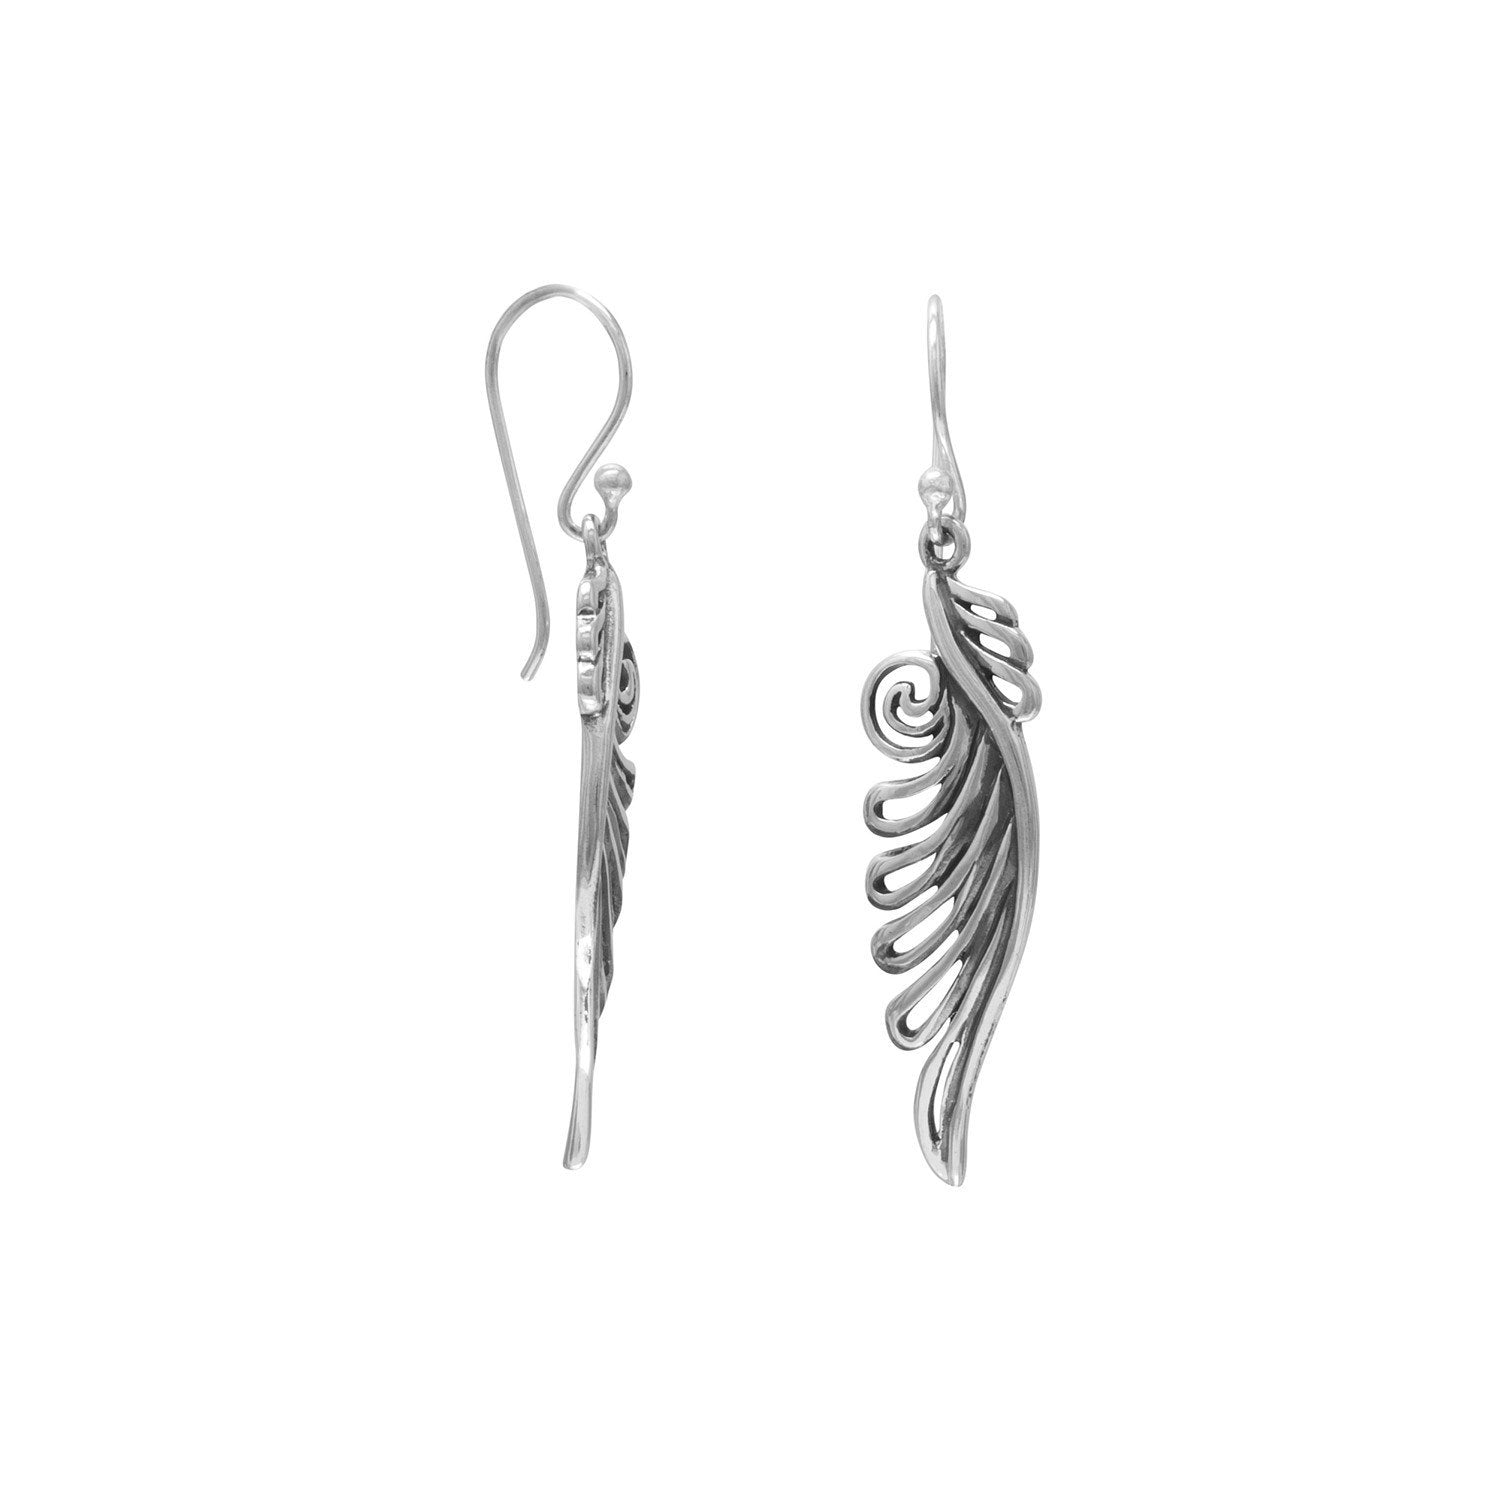 Ornate Angel Wing Earrings - Joyeria Lady